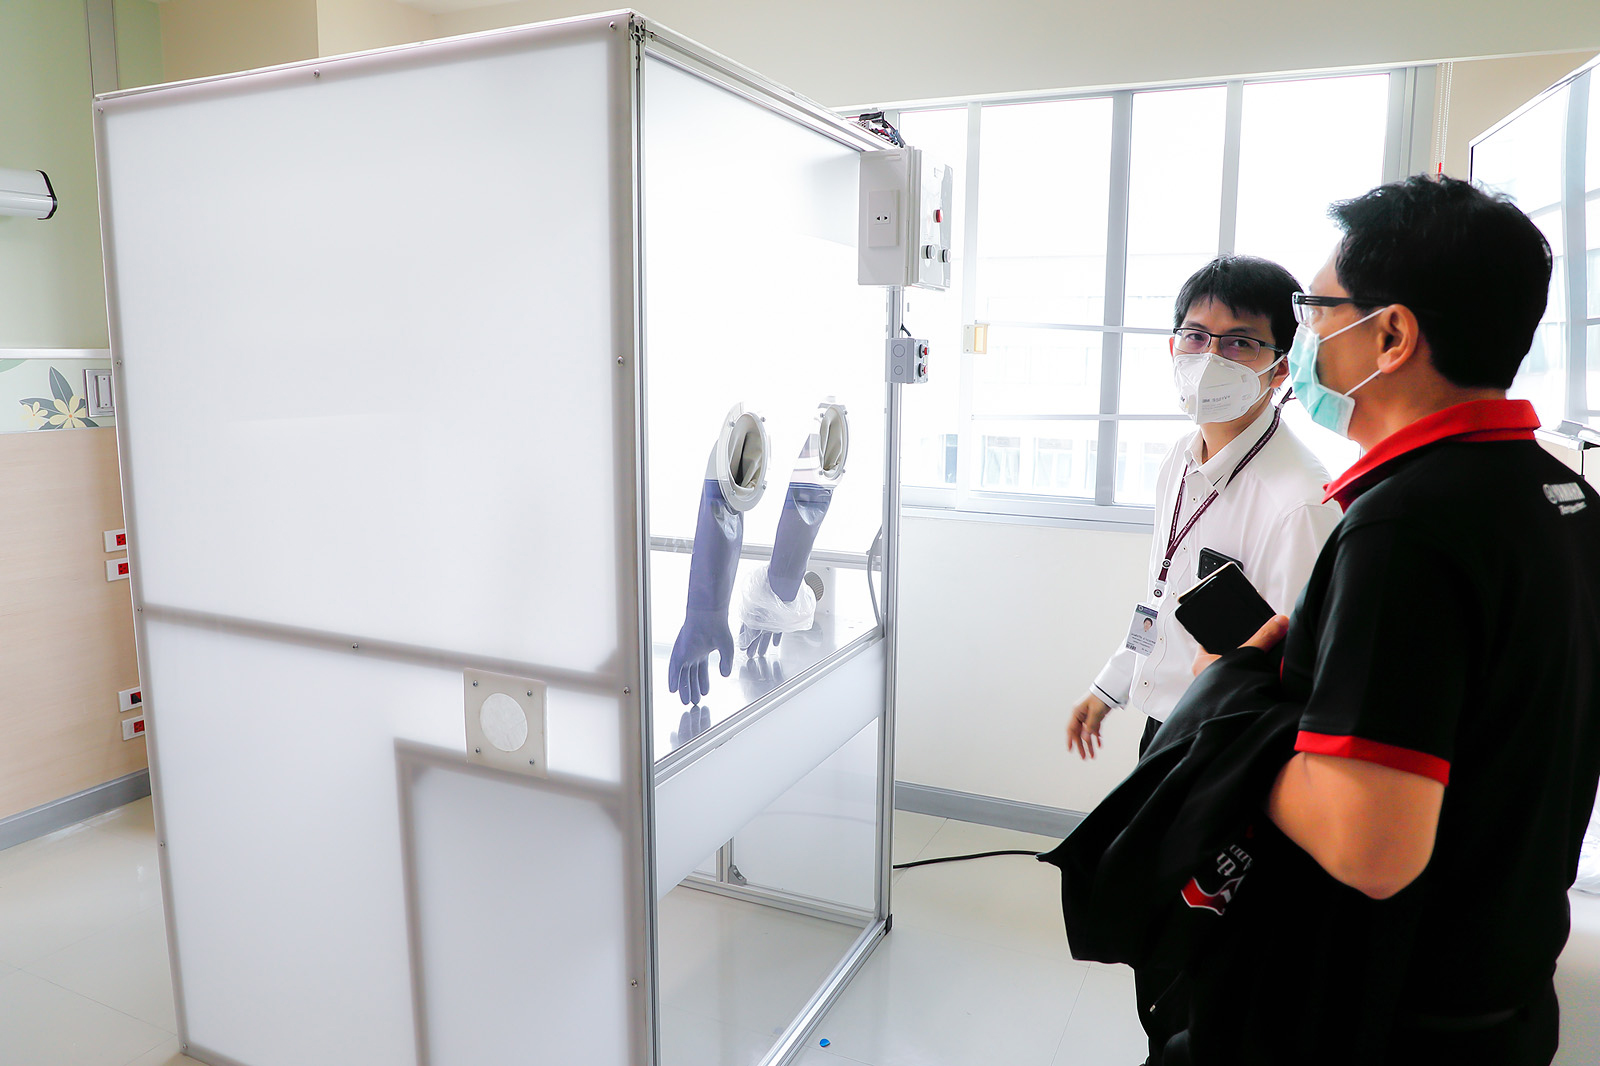 ยามาฮ่าร่วมสนับสนุนนักรบเสื้อกาวน์ มอบห้องตรวจหาเชื้อไวรัสโควิด-19ให้โรงพยาบาลรามาธิบดี